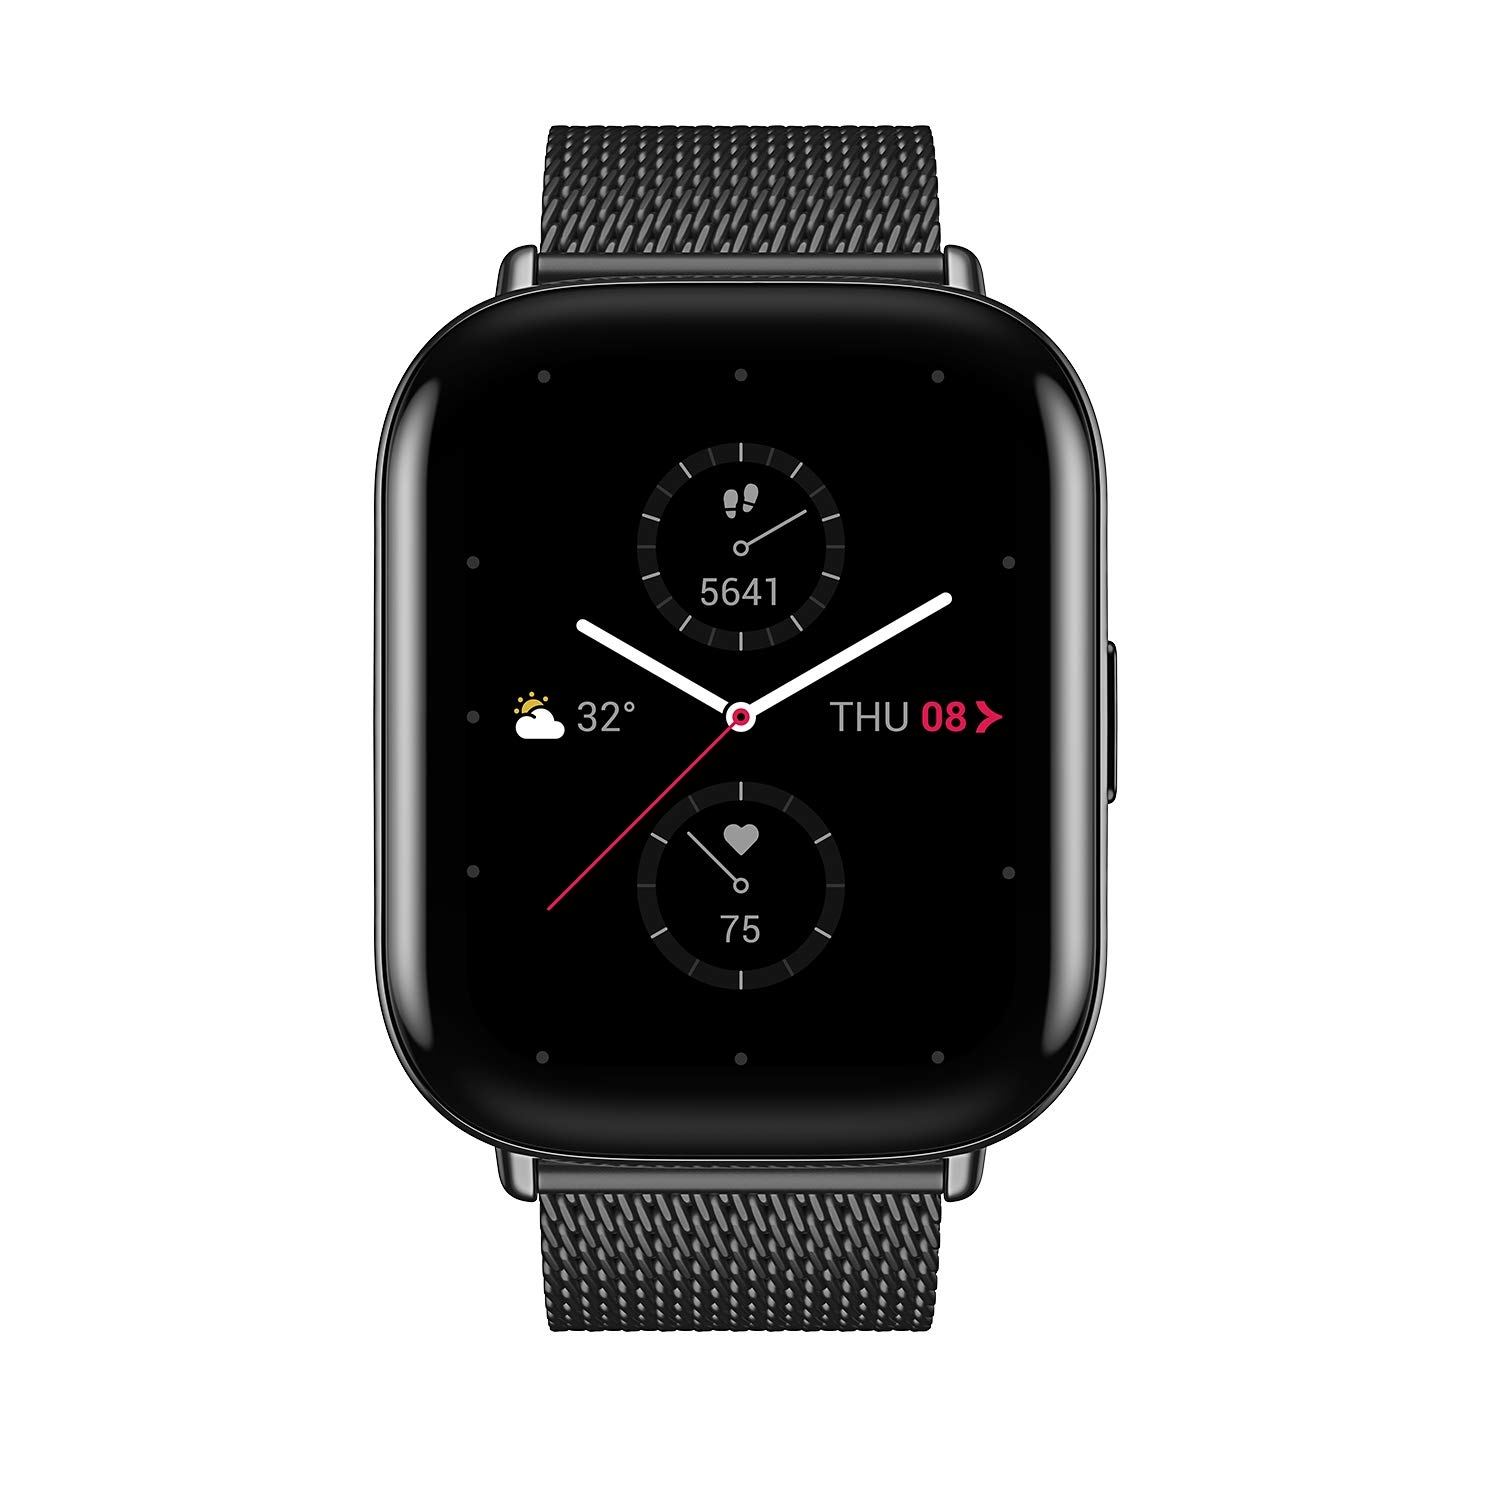 Zepp E Circle Smartwatch review - The Gadgeteer